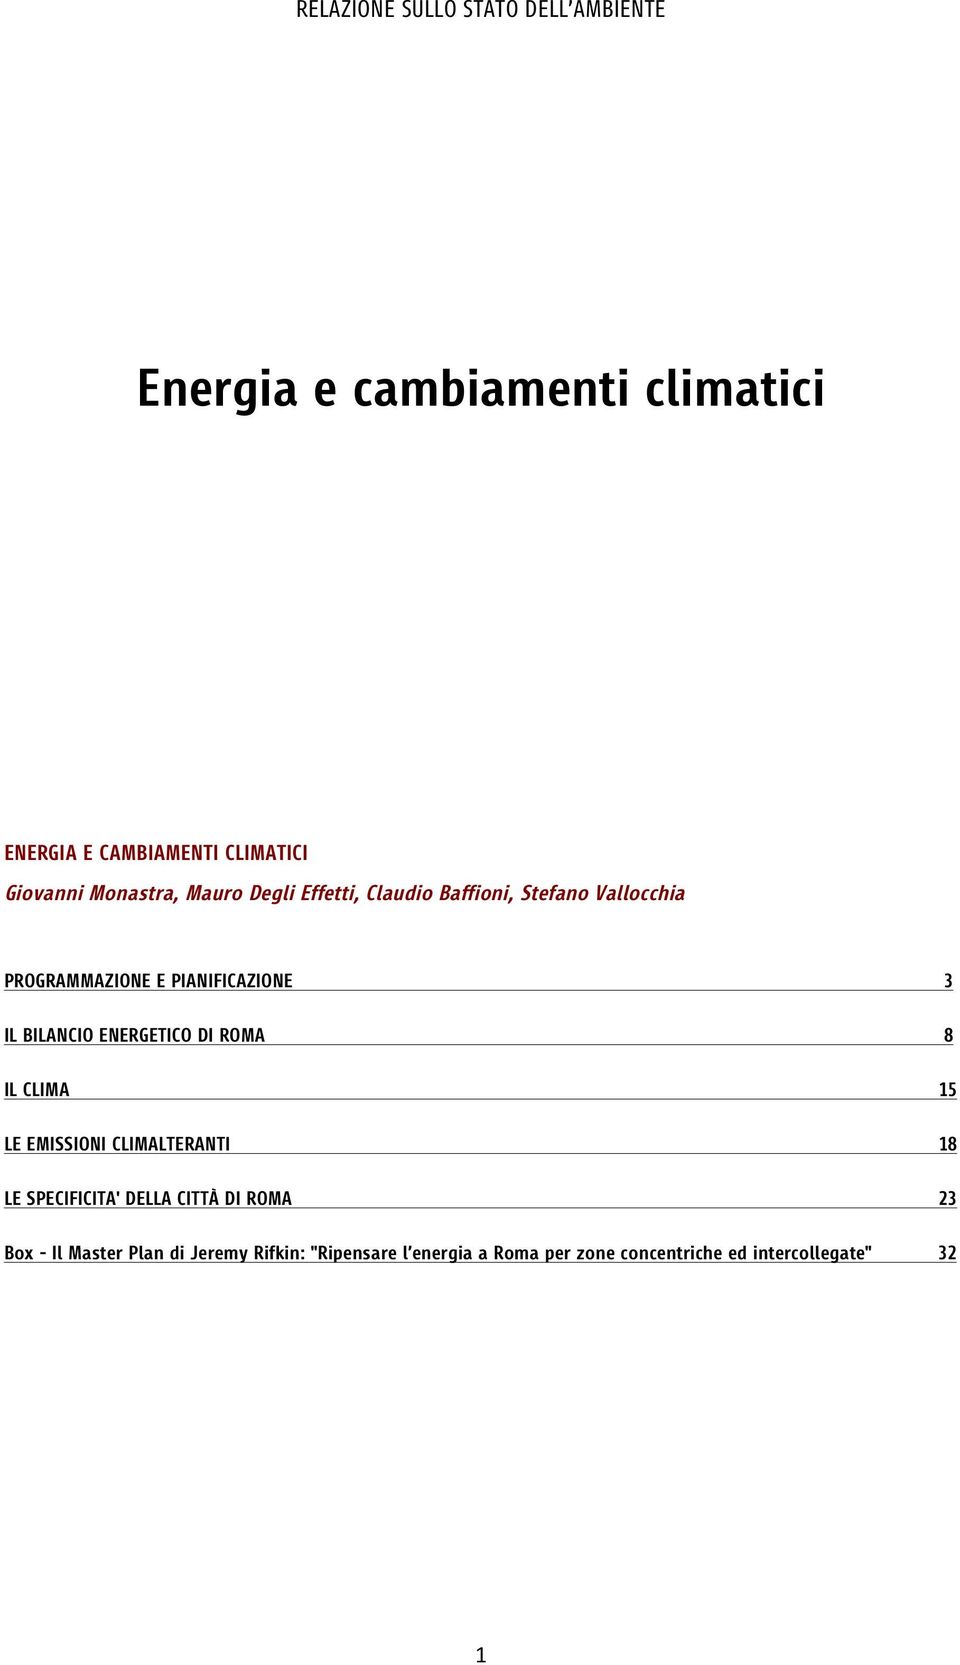 ENERGETICO DI ROMA 8 IL CLIMA 15 LE EMISSIONI CLIMALTERANTI 18 LE SPECIFICITA' DELLA CITTÀ DI ROMA